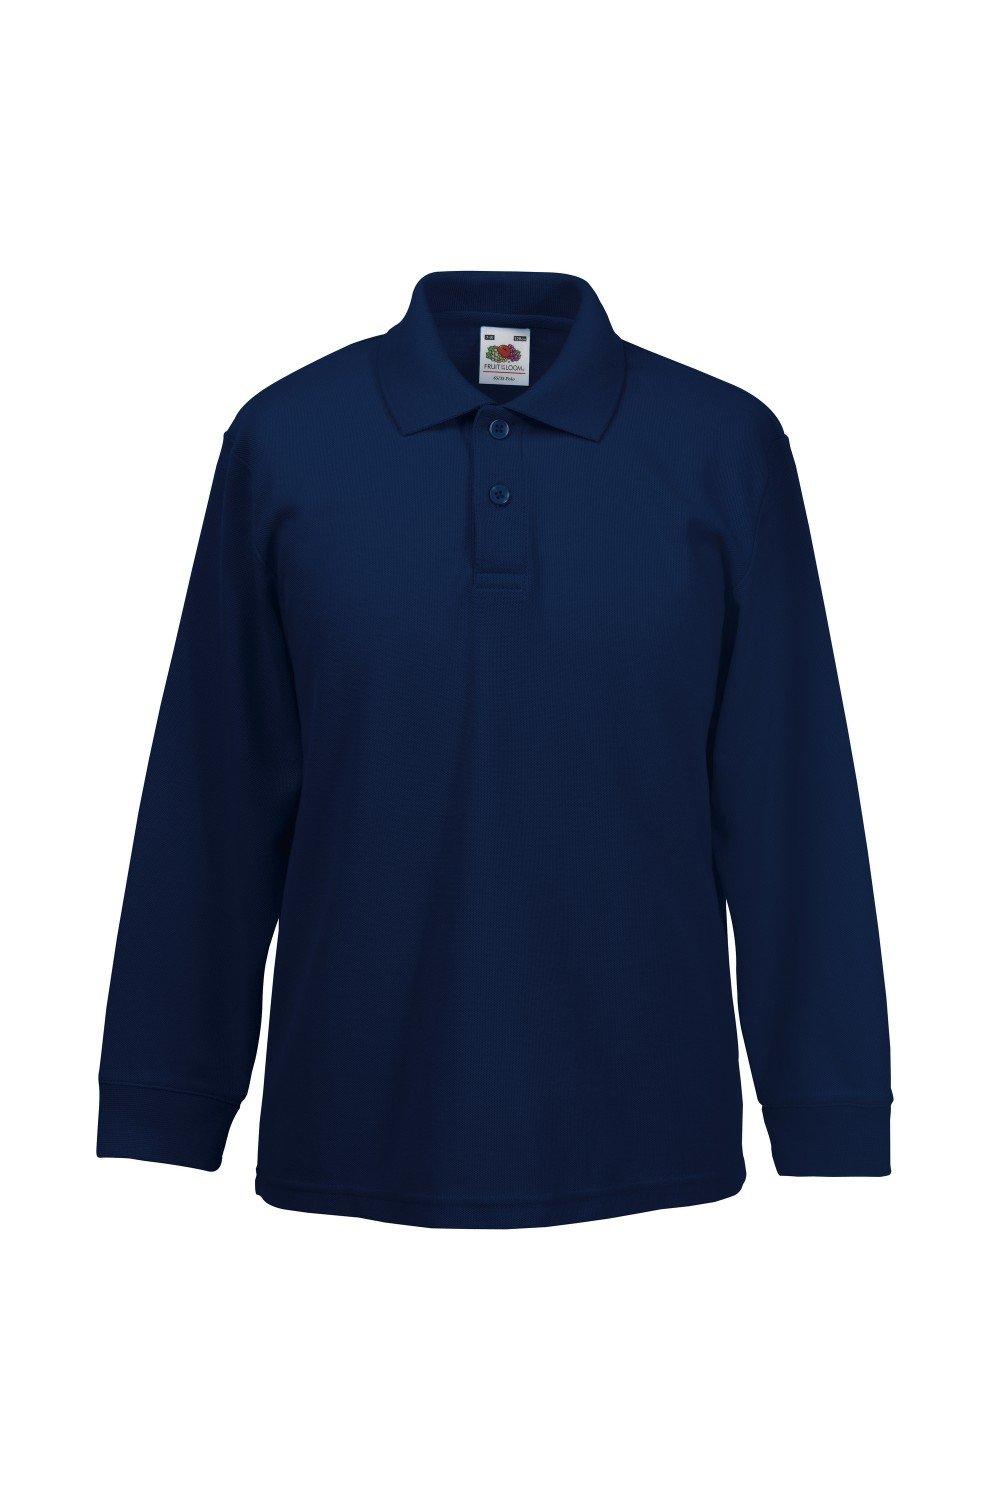 Long Sleeve 65/35 Pique Polo / Polo Shirts